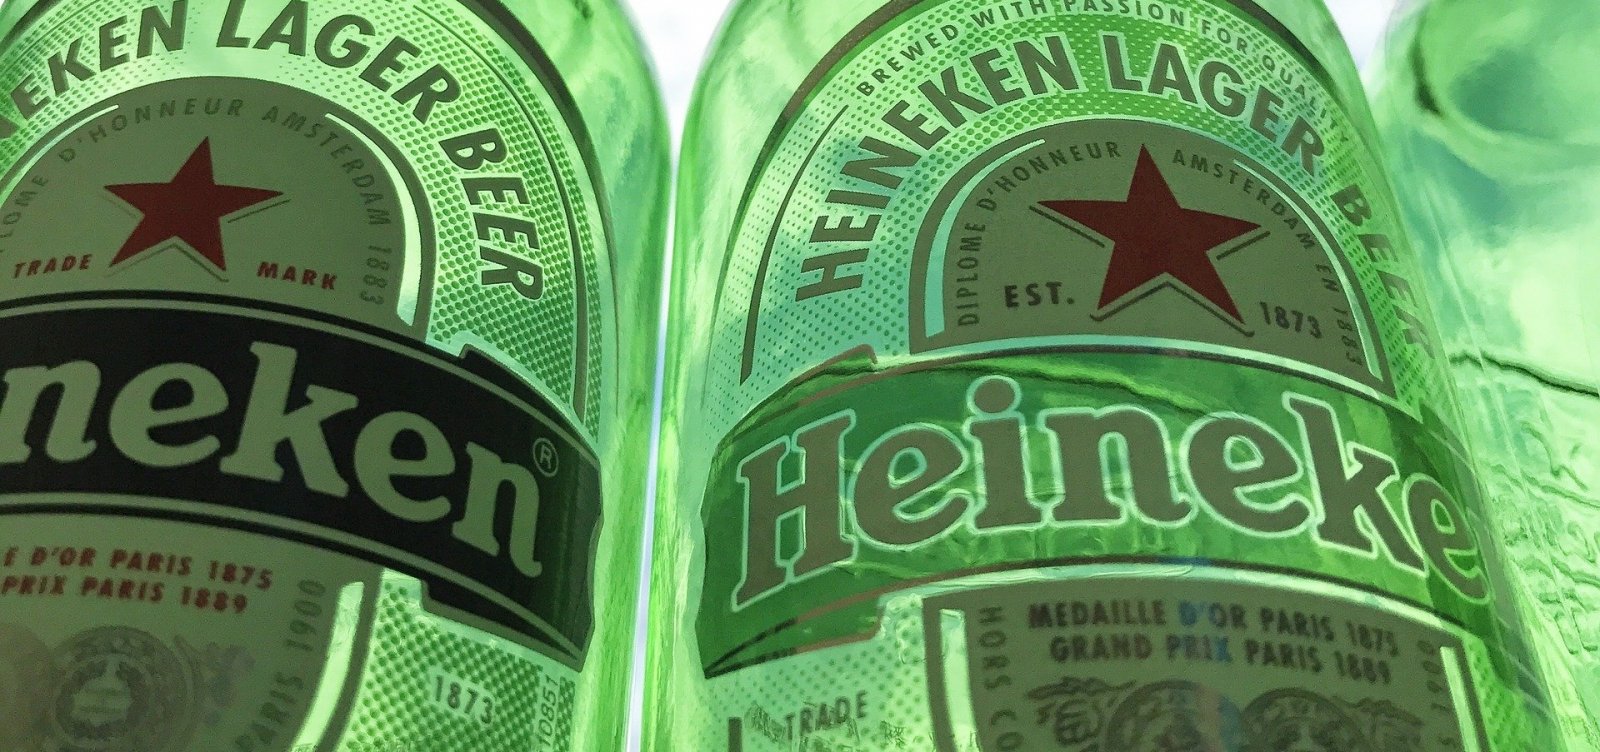 Heineken anuncia recall de garrafa que pode soltar lasca de vidro